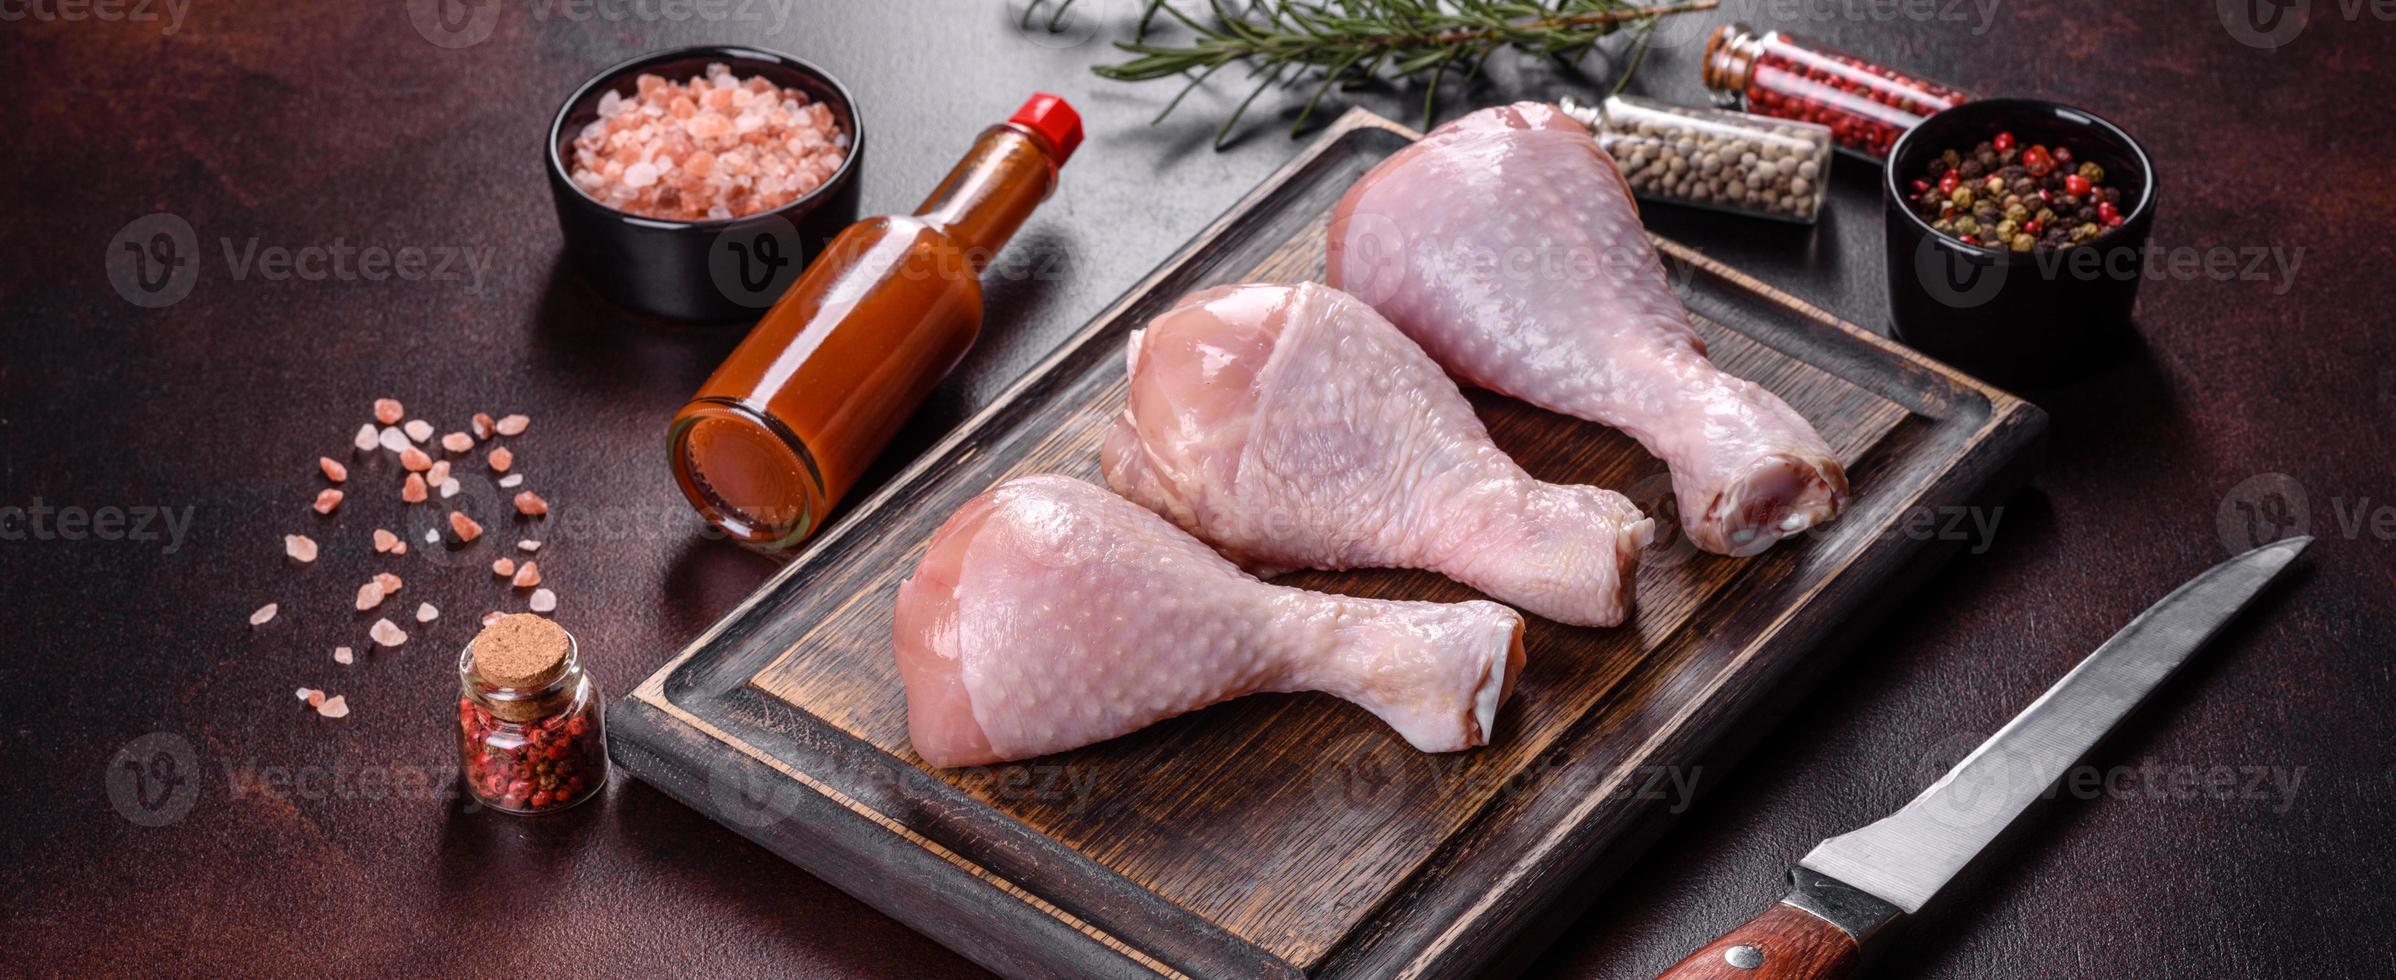 färska råa kycklinglår med kryddor, salt och örter på en skärbräda foto